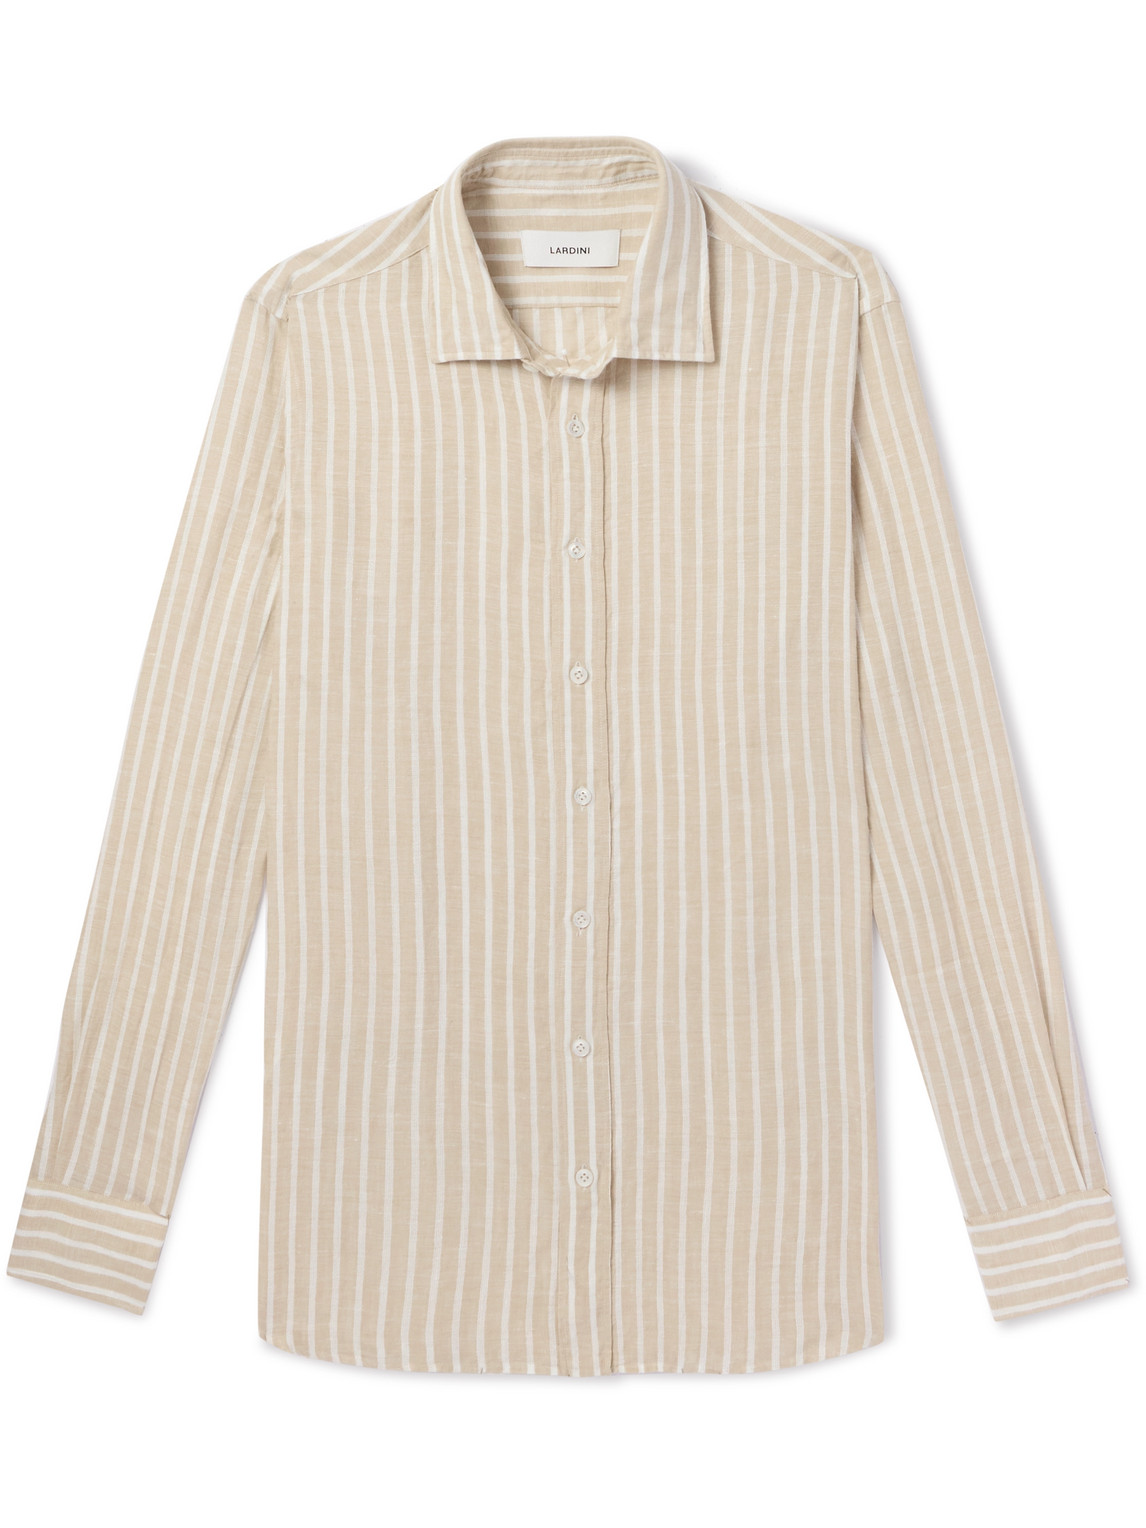 Lardini - Striped Linen Shirt - Men - Neutrals - EU 41 von Lardini